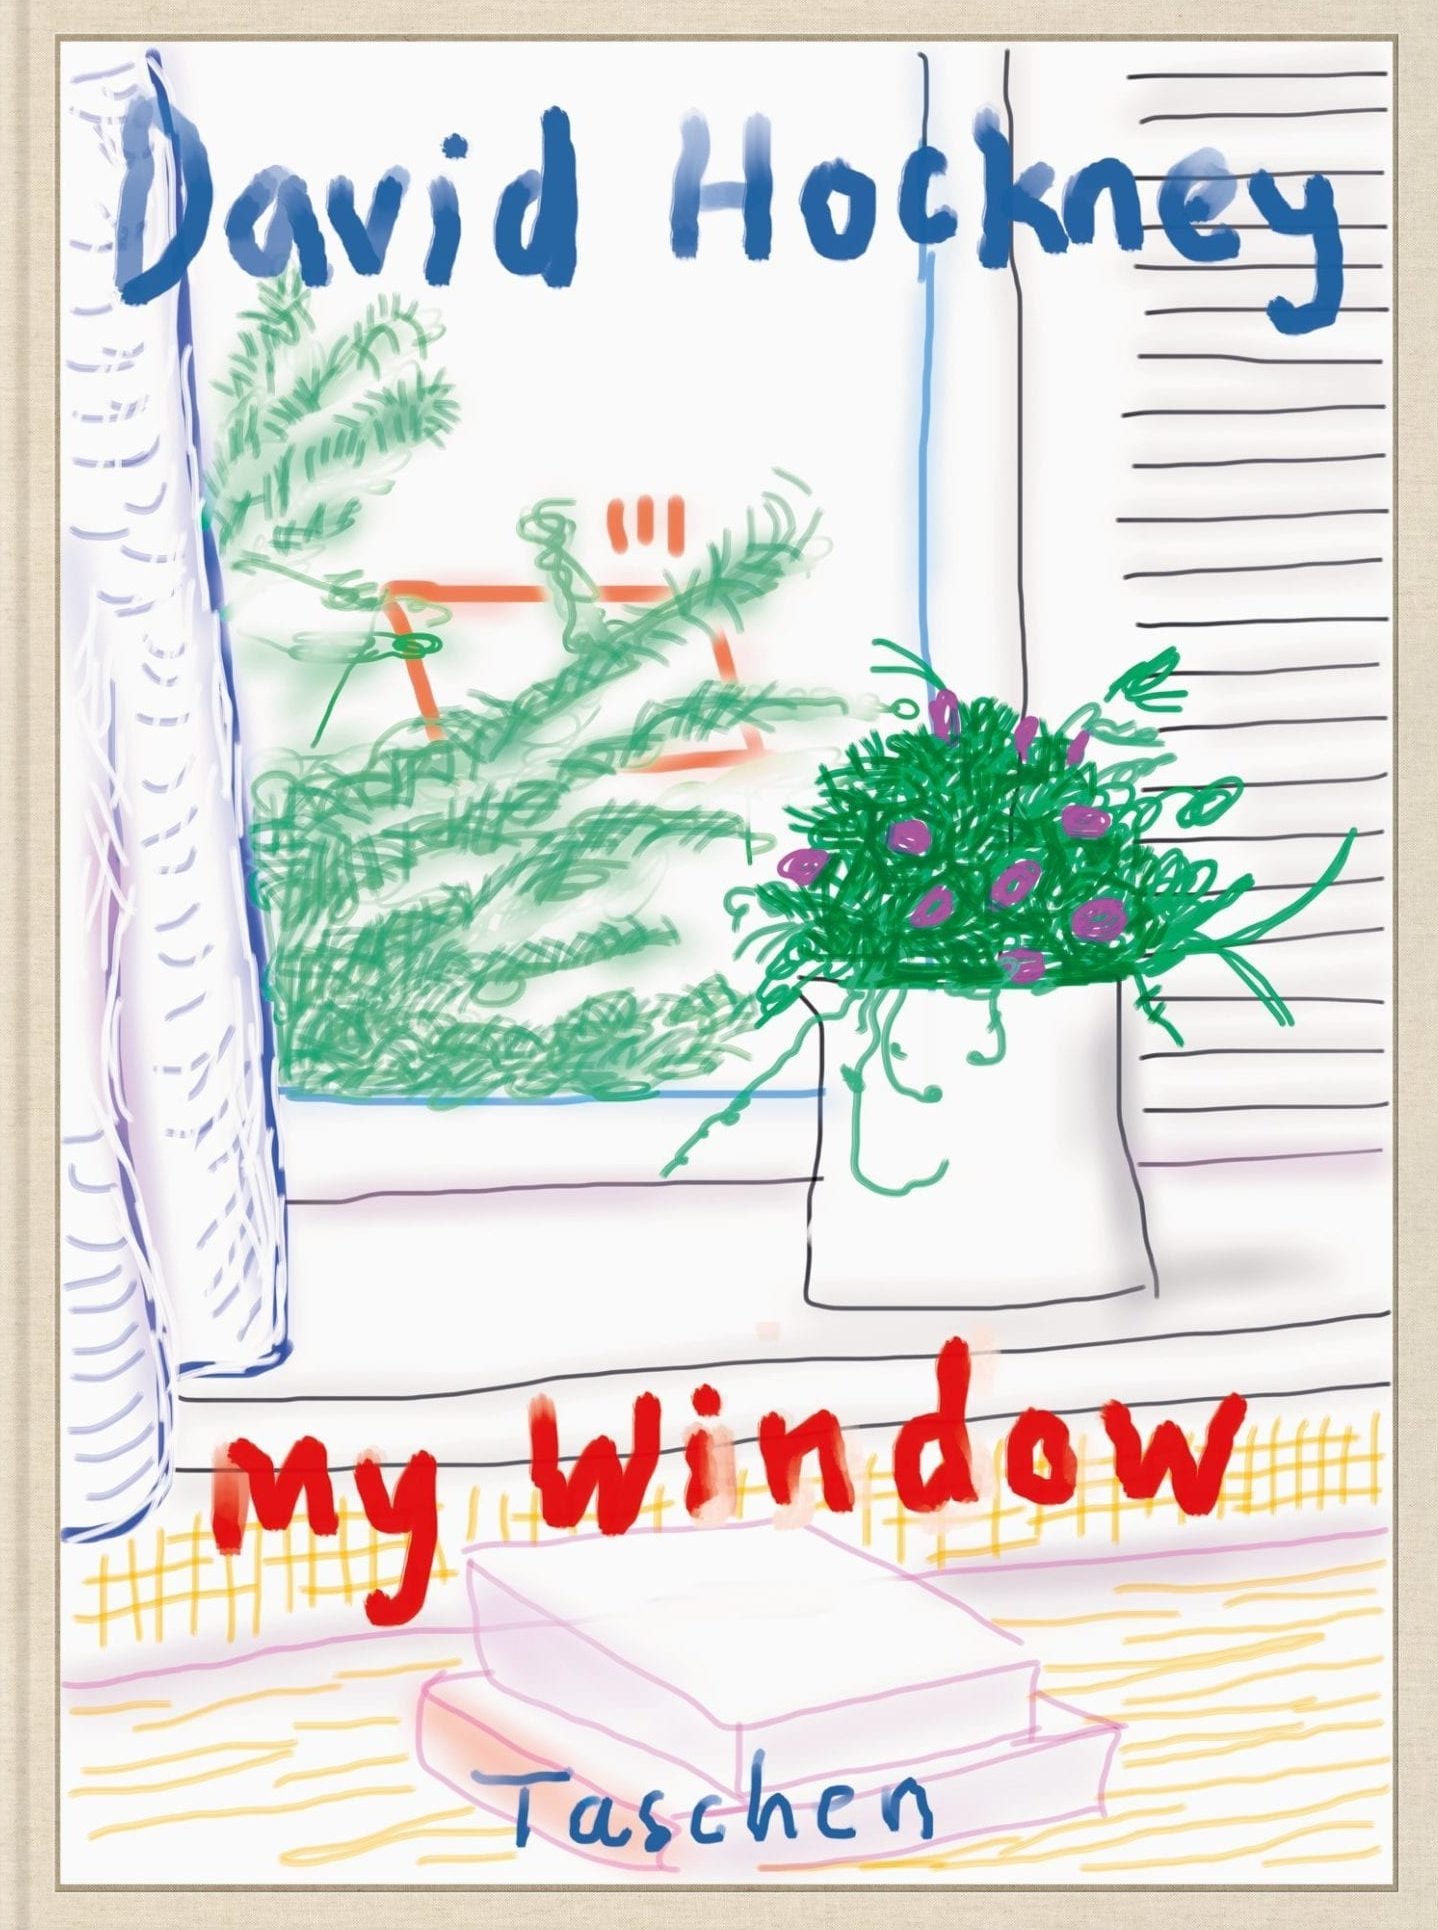 David Hockney. My Window. (Baby Sumo)